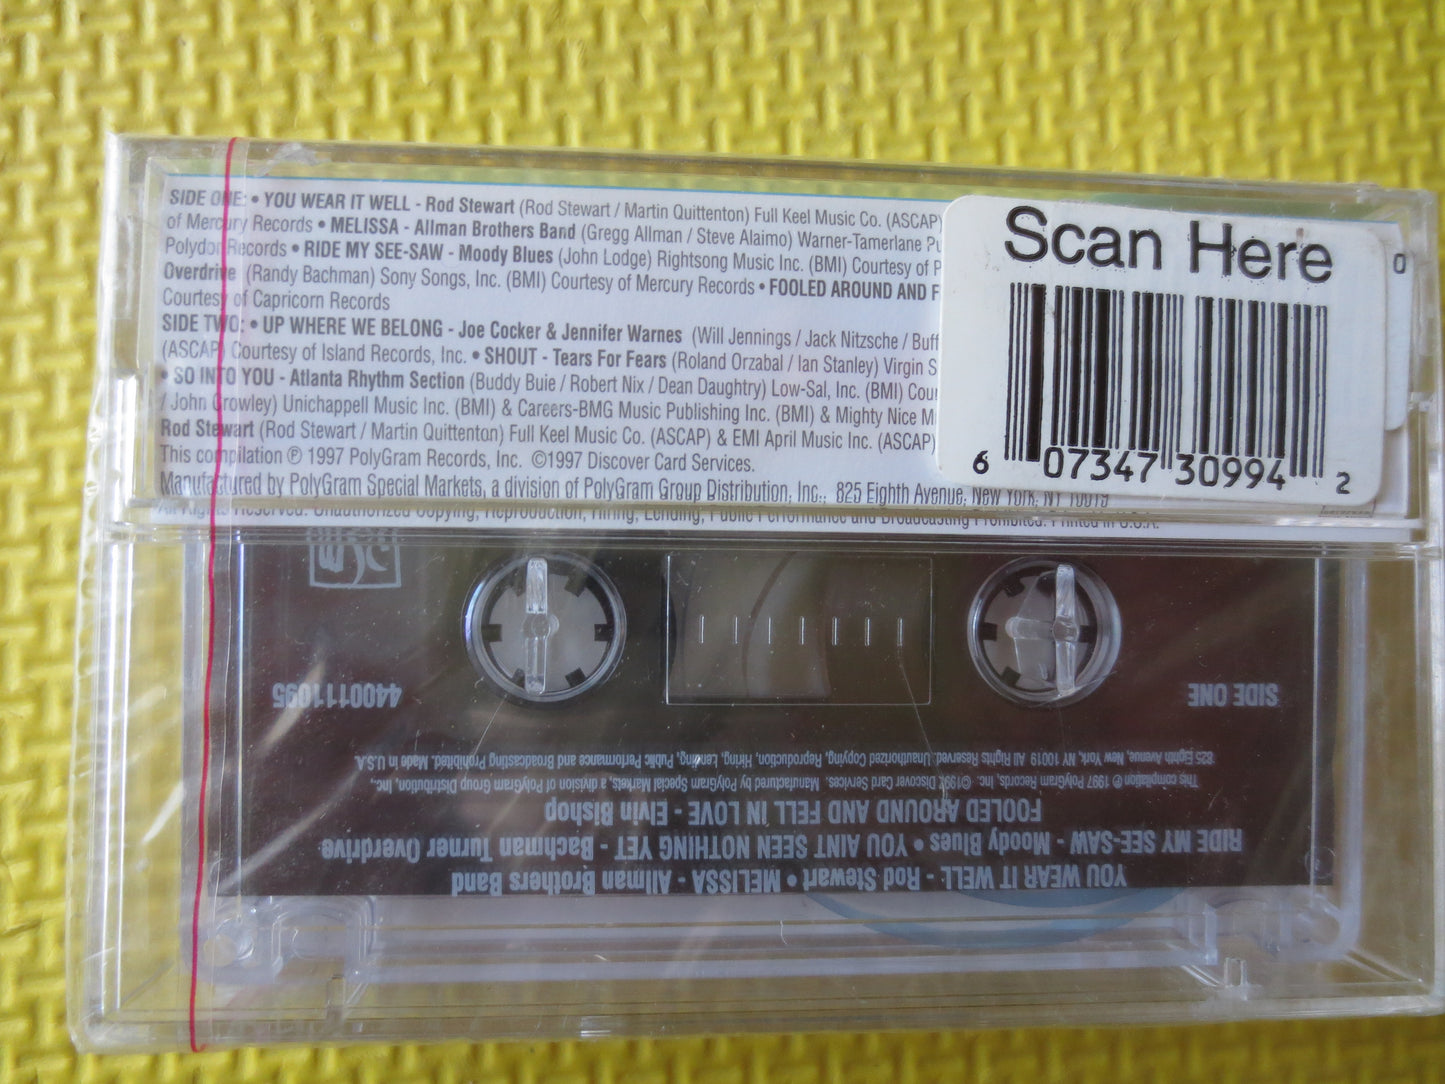 ROCKIN' Till MIDNIGHT, ROCK Cassettes, Rock Music Tapes, Rod Stewart Tapes, Tape Cassette, Music Cassette, 1997 Cassette